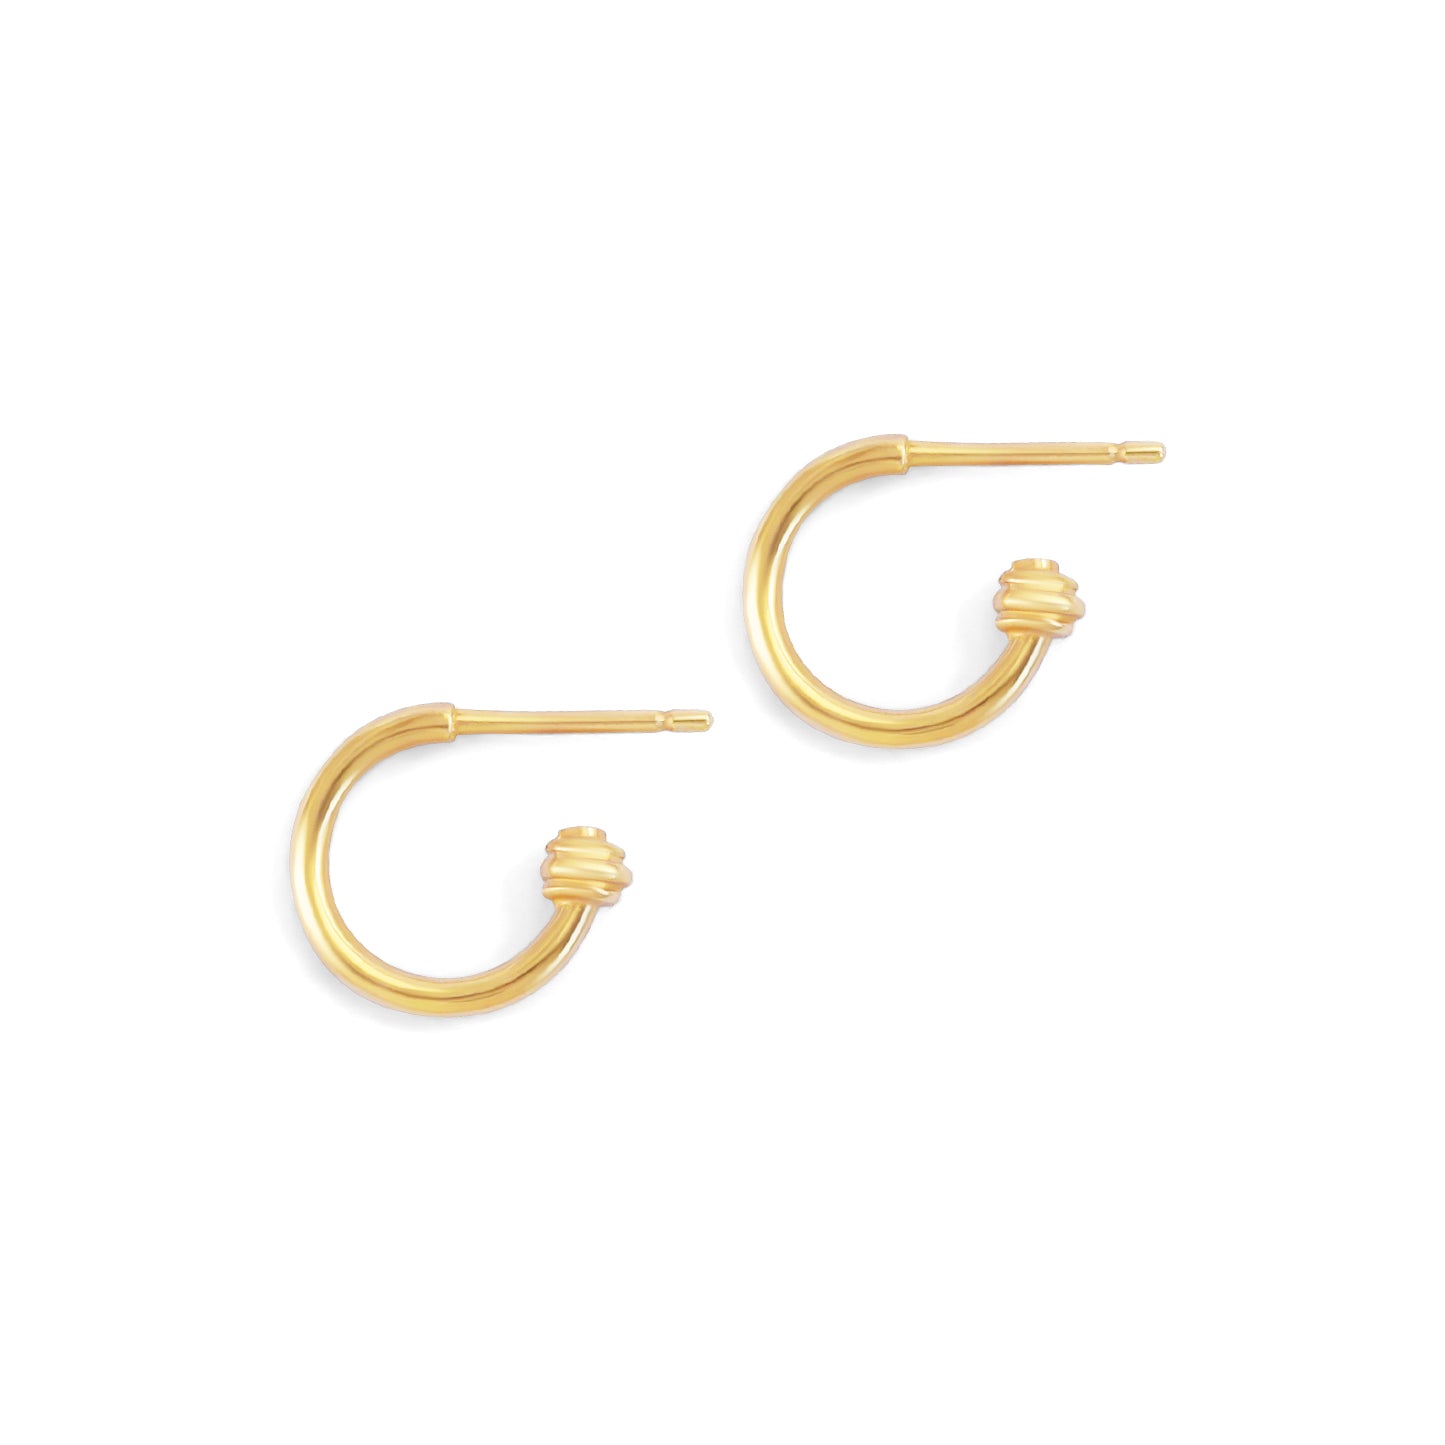 Pair of Cornice End Hoop / Small earrings